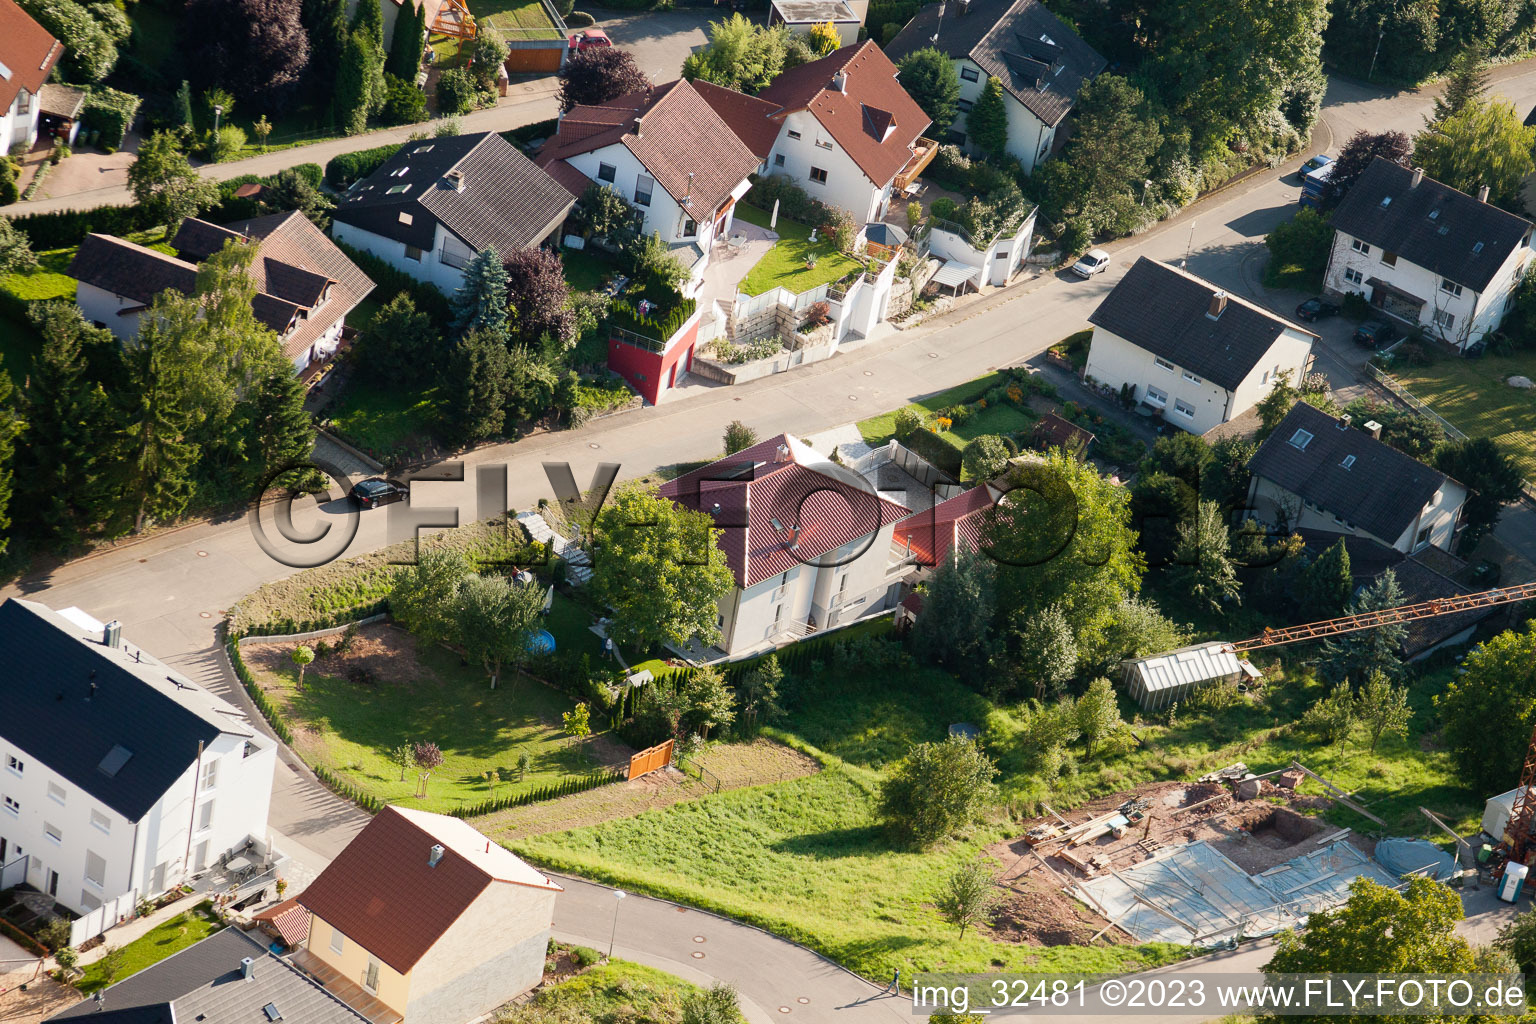 Keltern im Bundesland Baden-Württemberg, Deutschland aus der Luft betrachtet